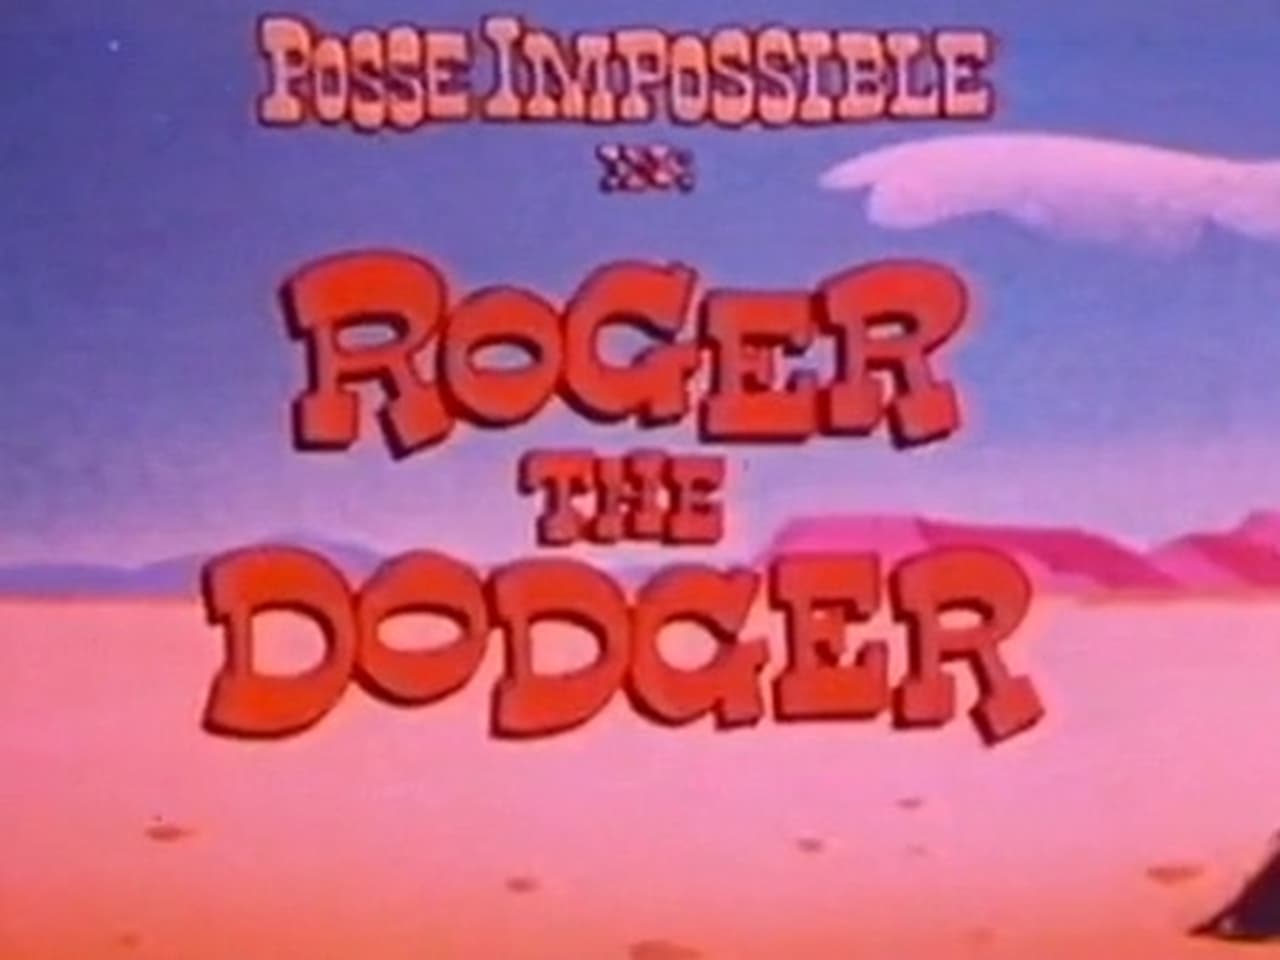 Roger the Dodger